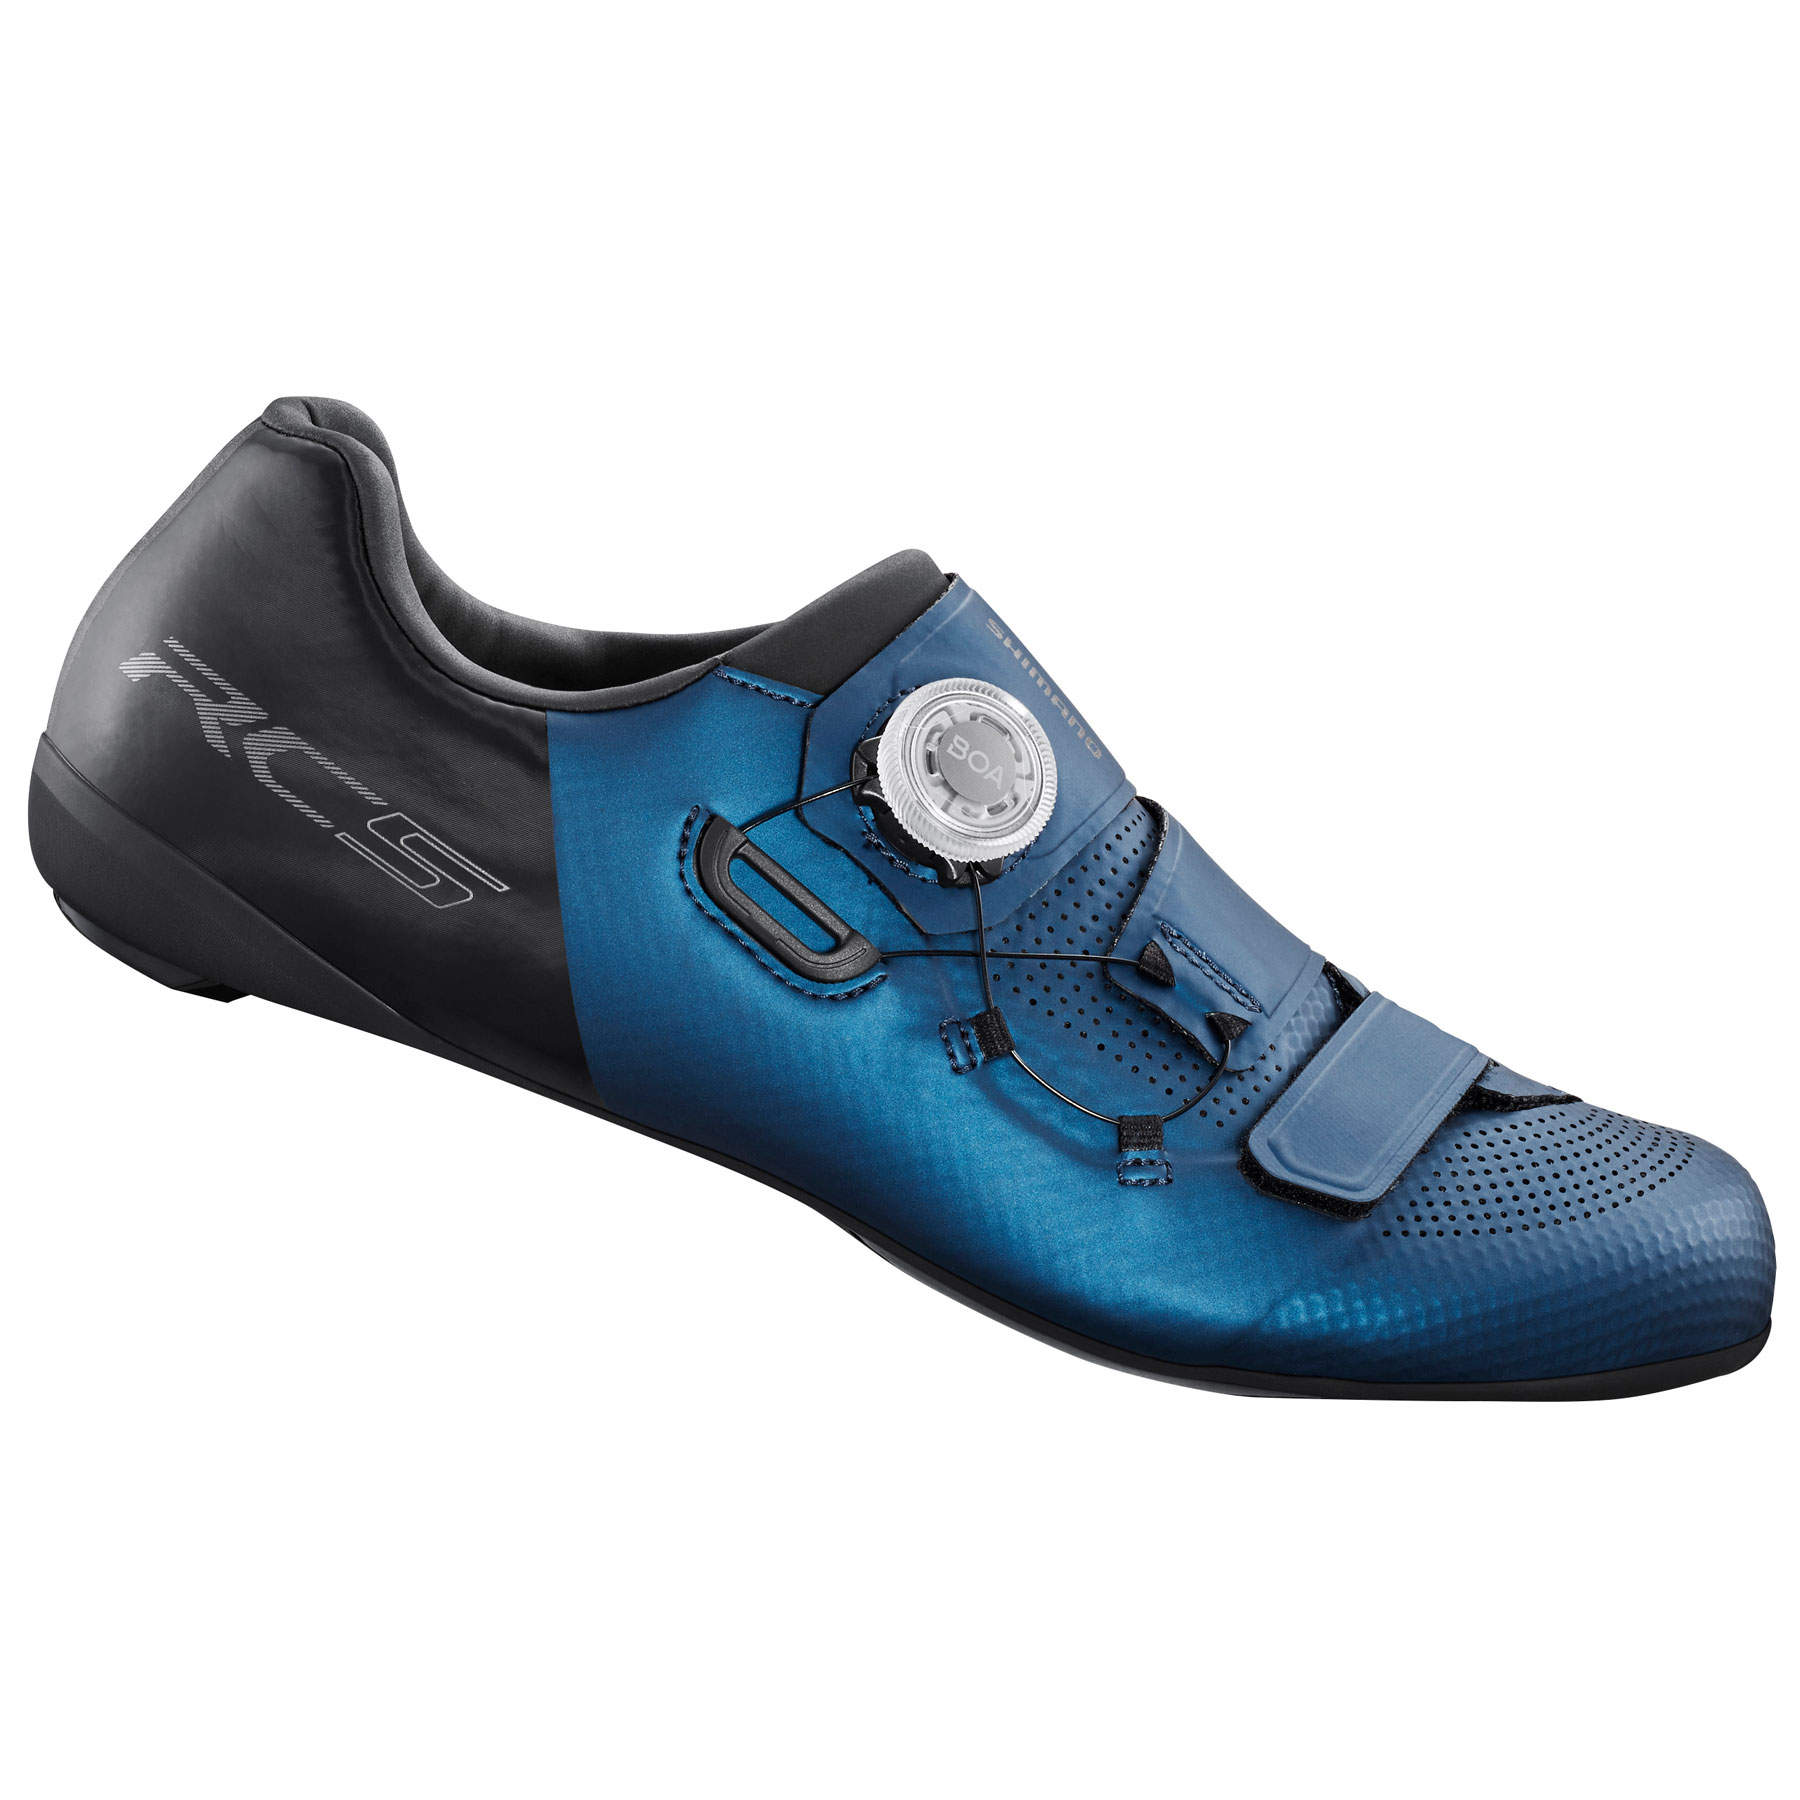 Produktbild von Shimano SH-RC502 Rennradschuhe Herren - Blau